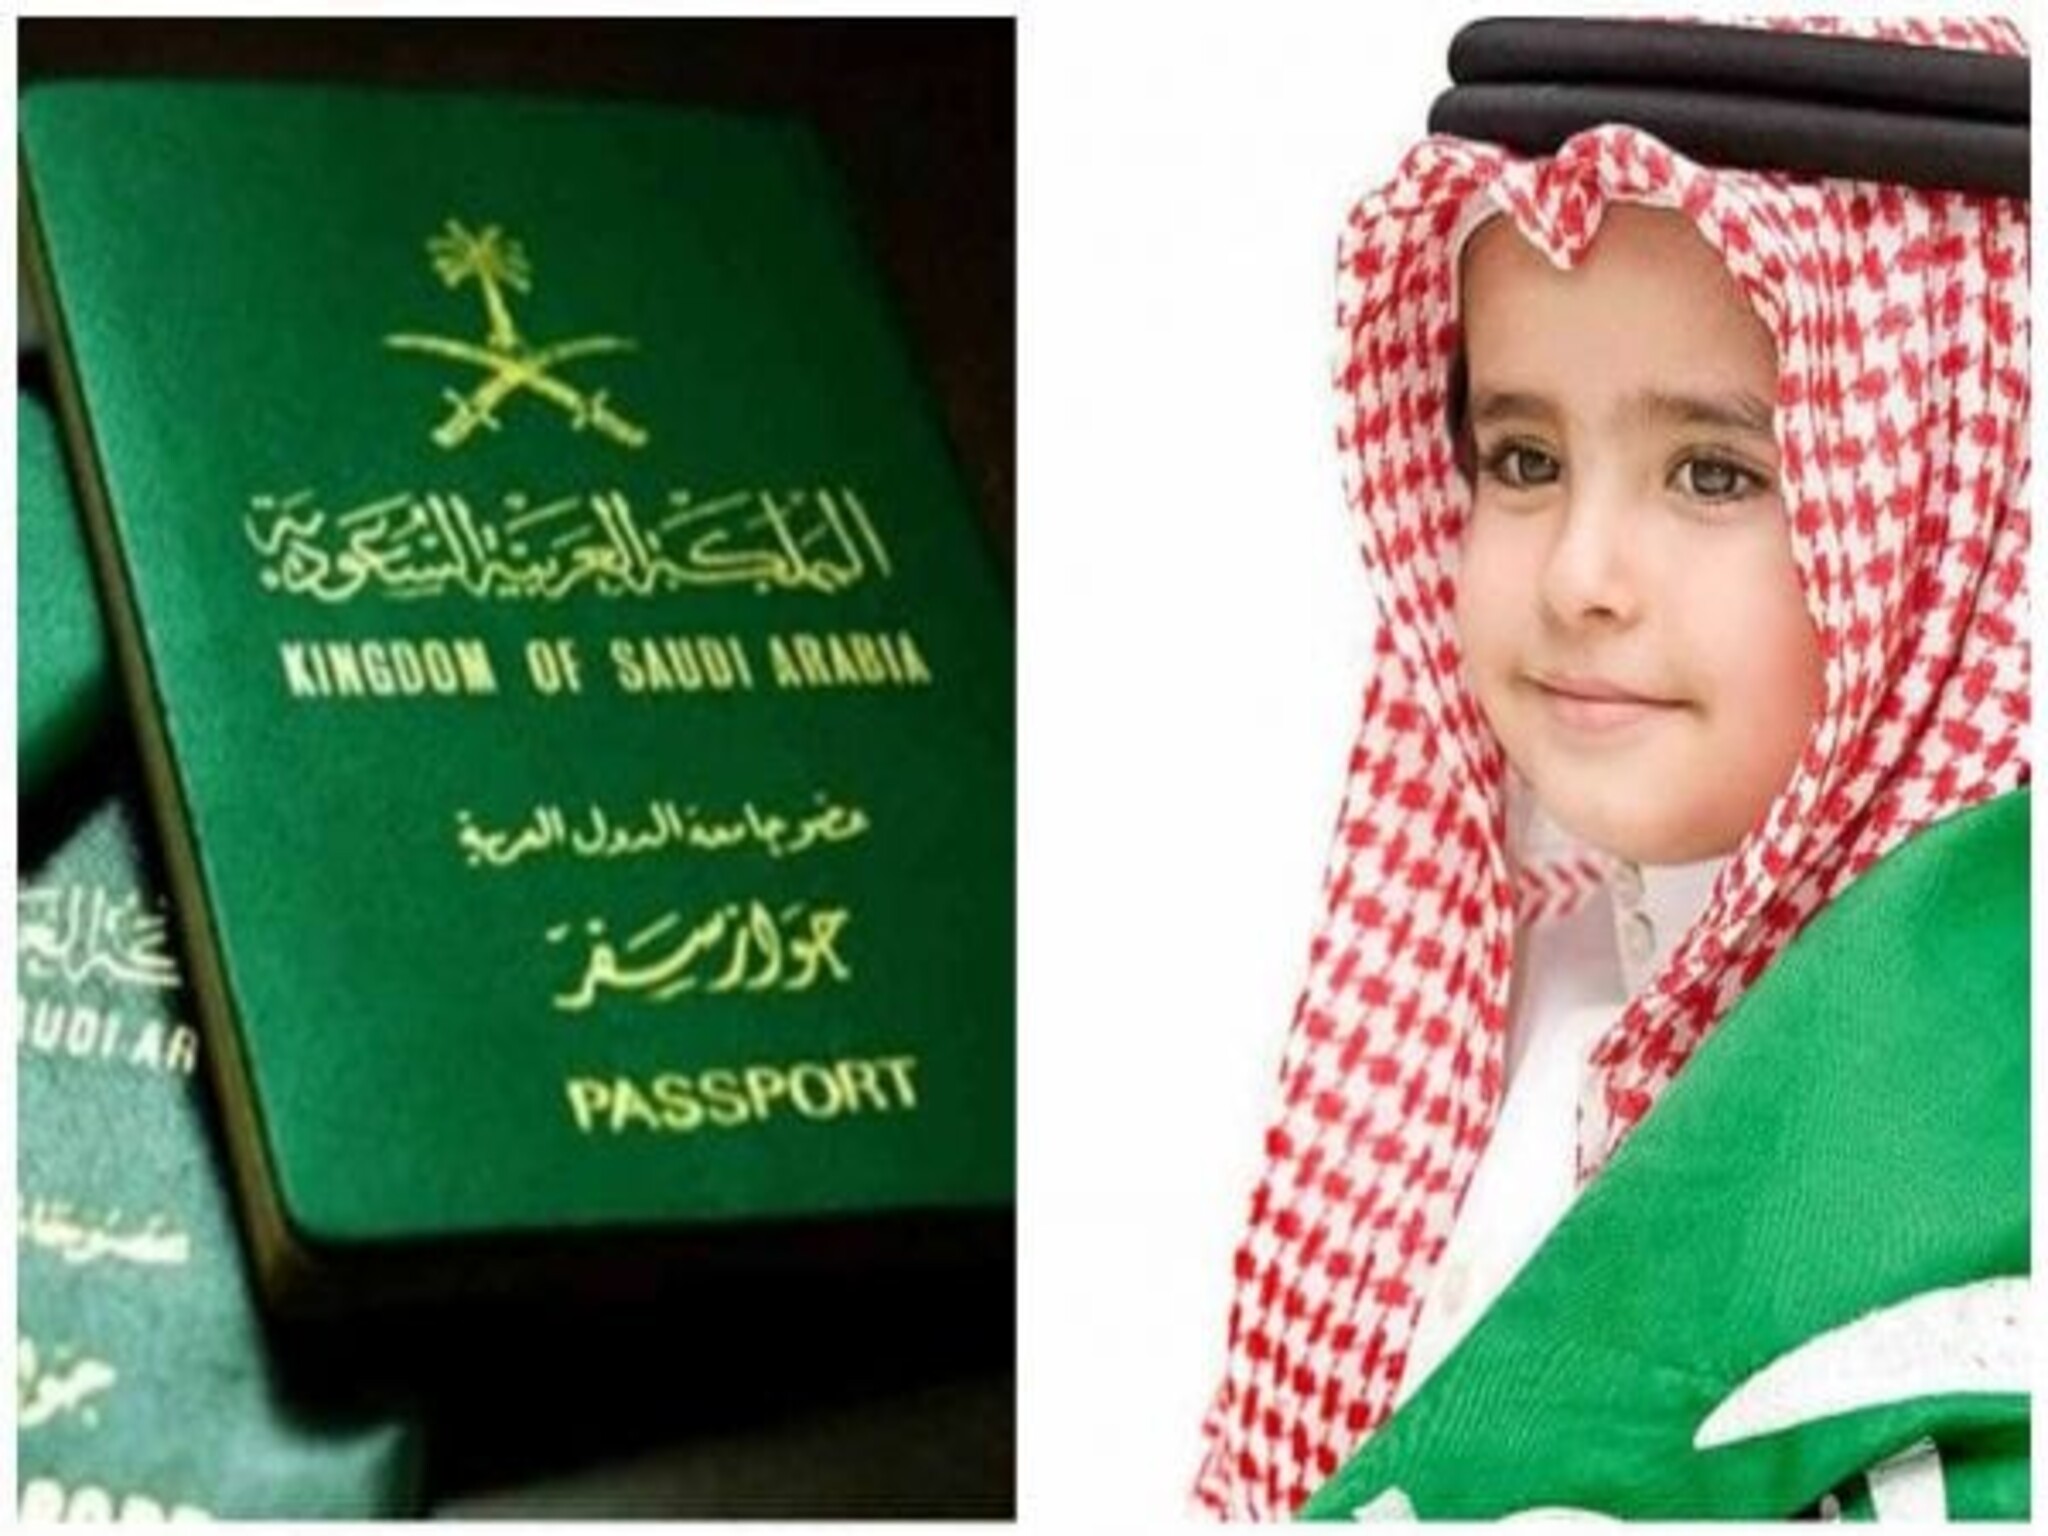 شروط الصور في جواز السفر السعودي للأطفال 1445هـ ومتطلبات زي التصوير